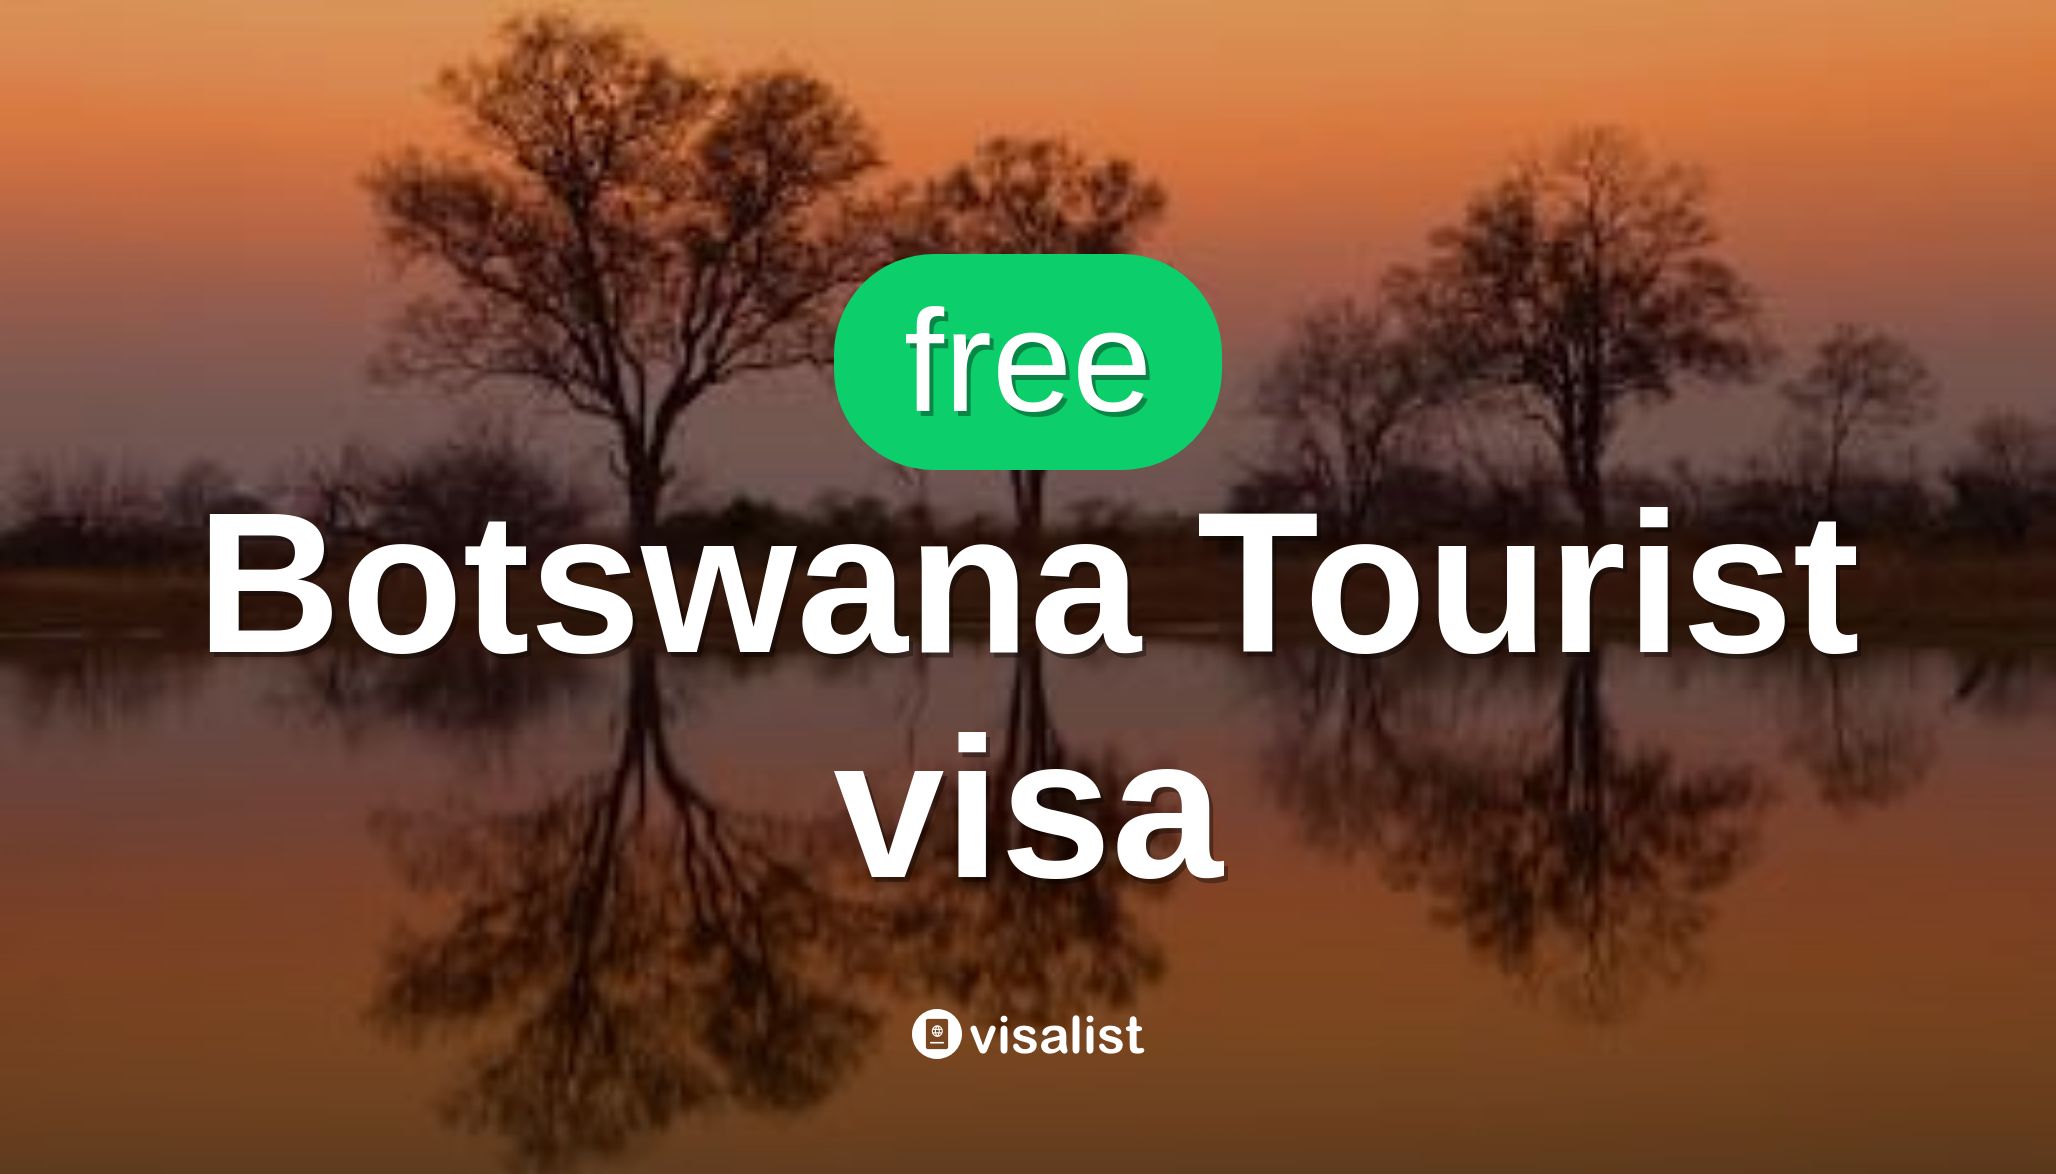 botswana tourist visa requirements